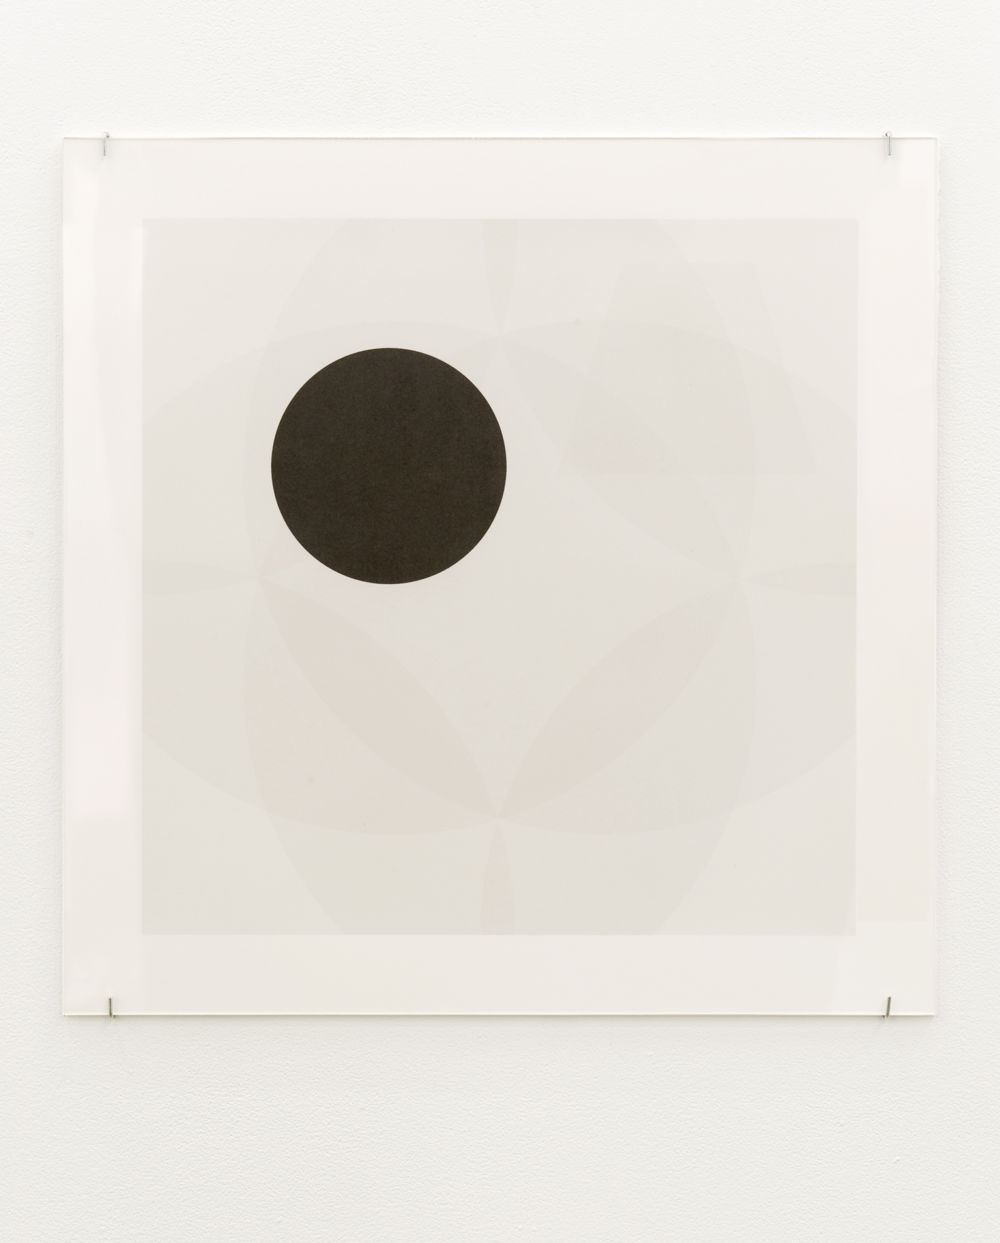 ​Janice Kerbel, Cue, 2011, silkscreen on paper, 22 x 22 in. (56 x 56 cm) by 